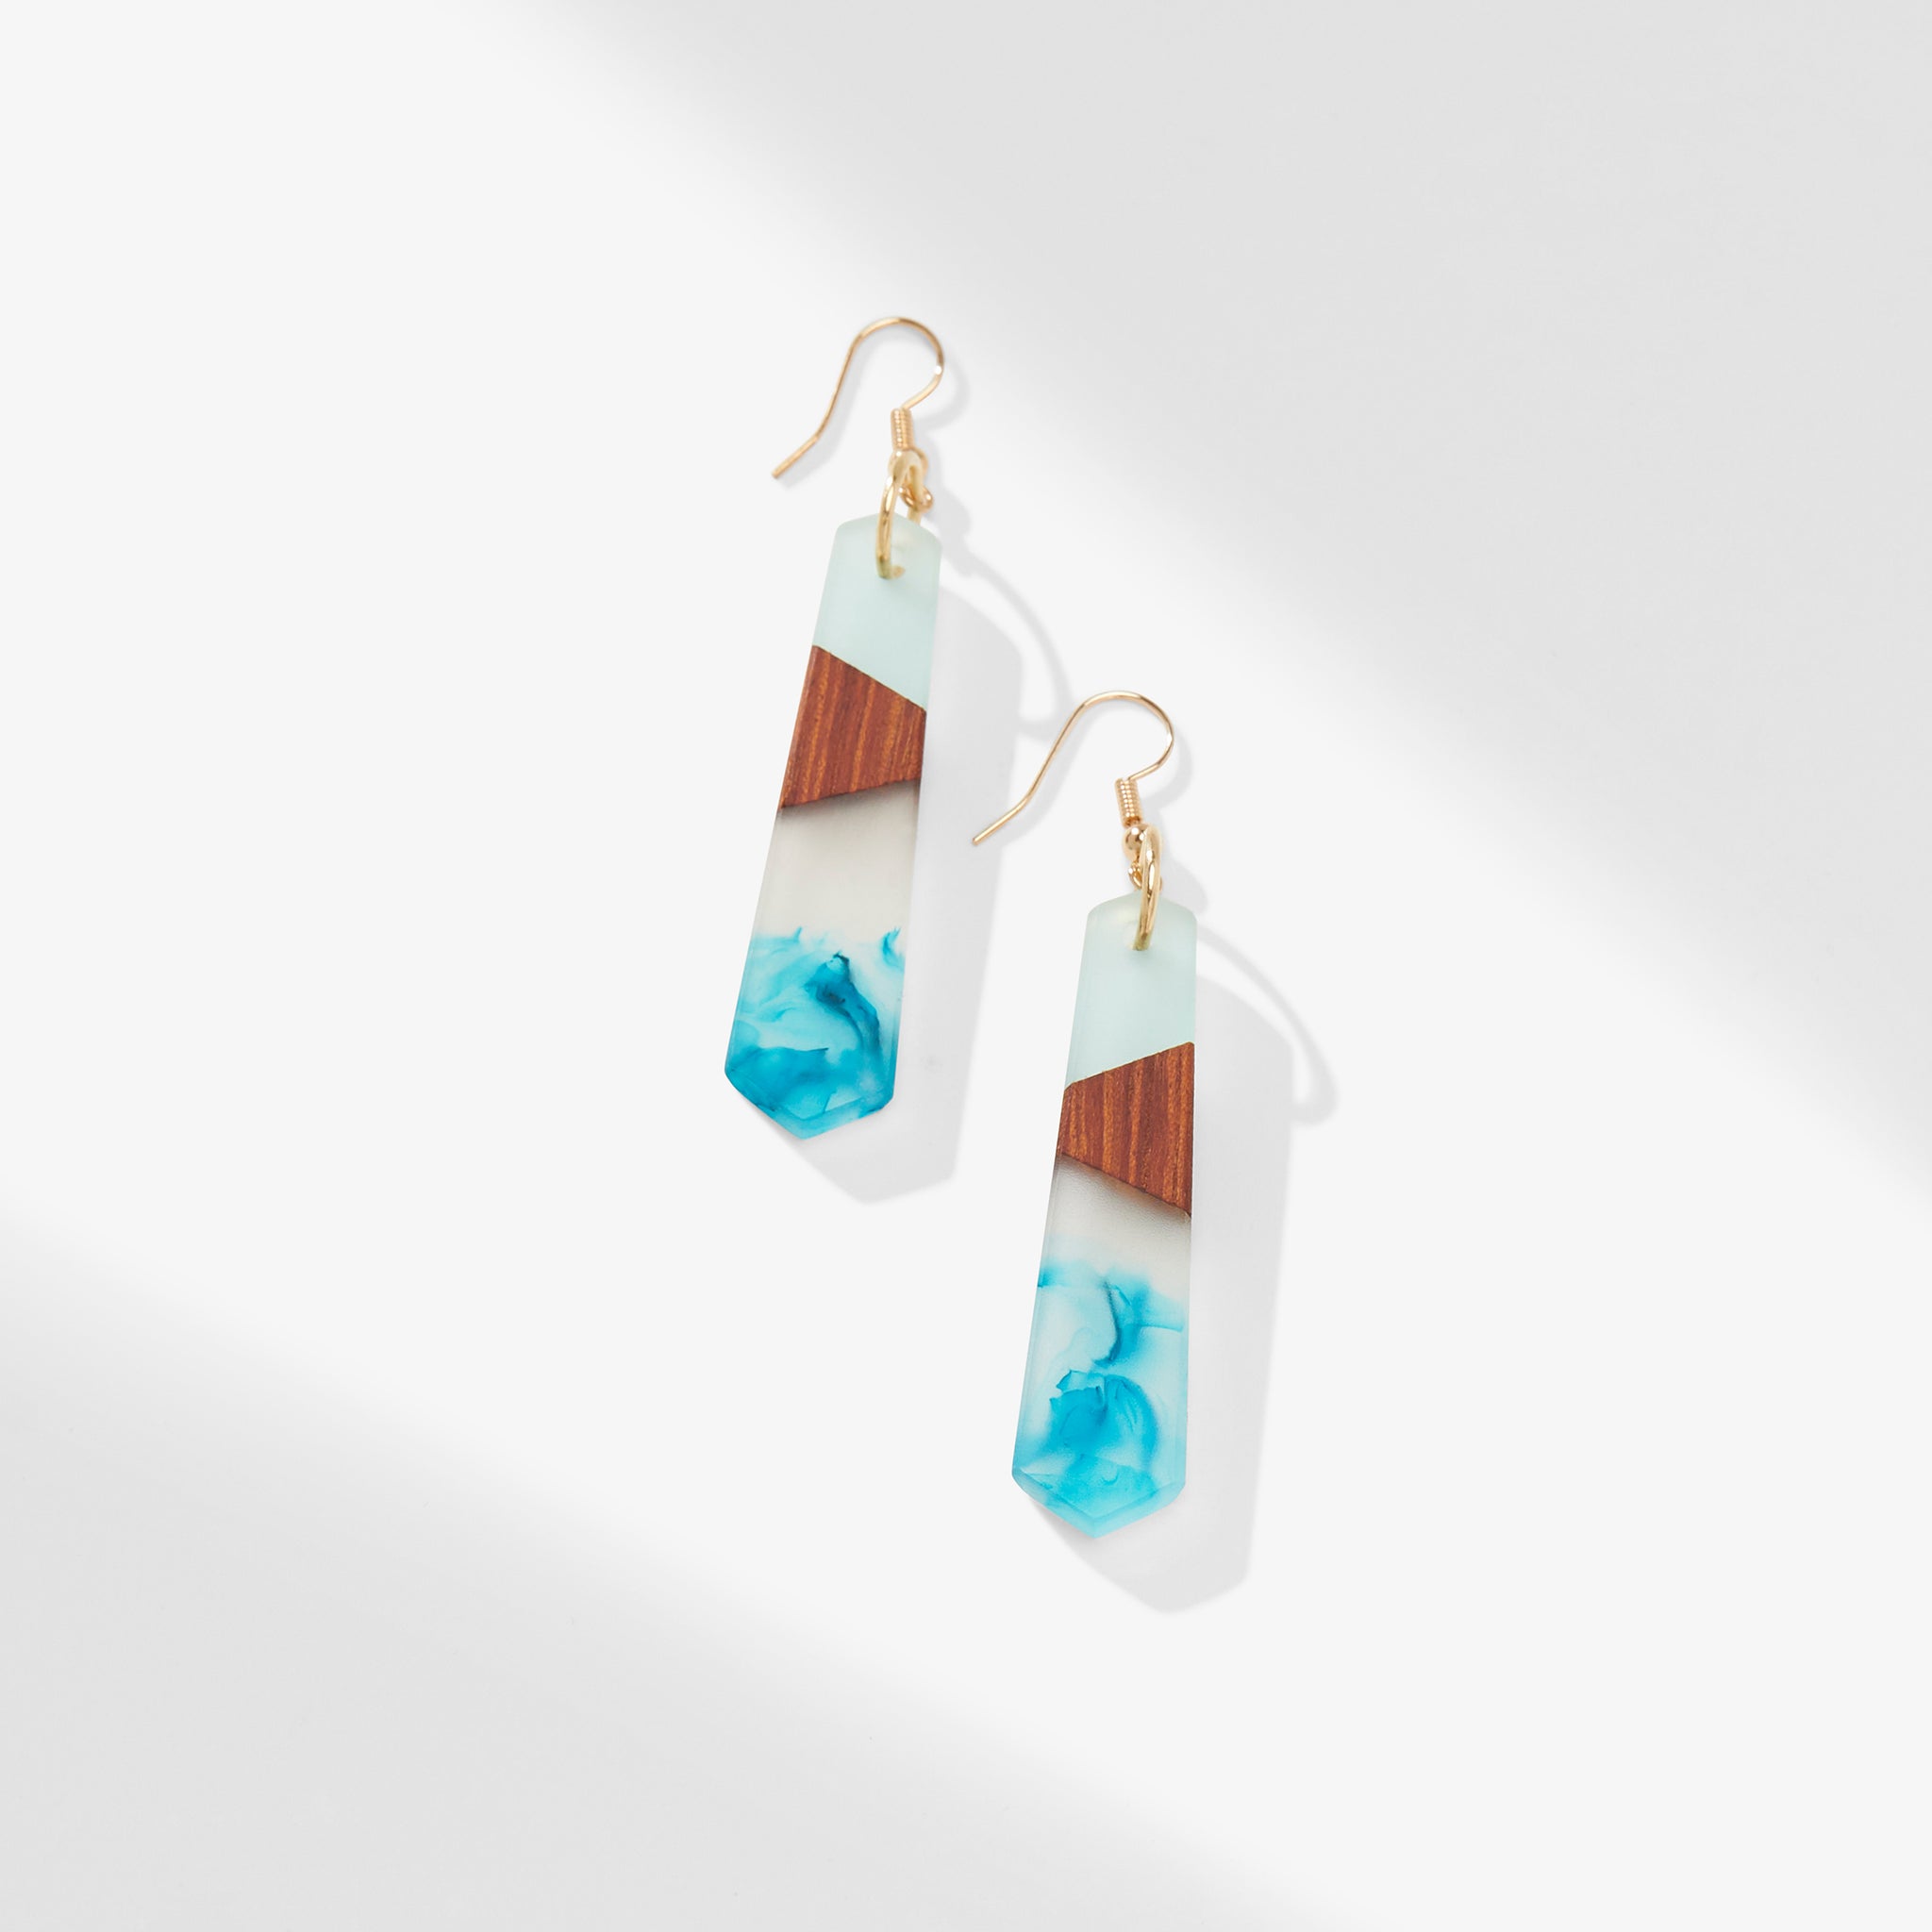 still image of the noemi earrings in aqua 